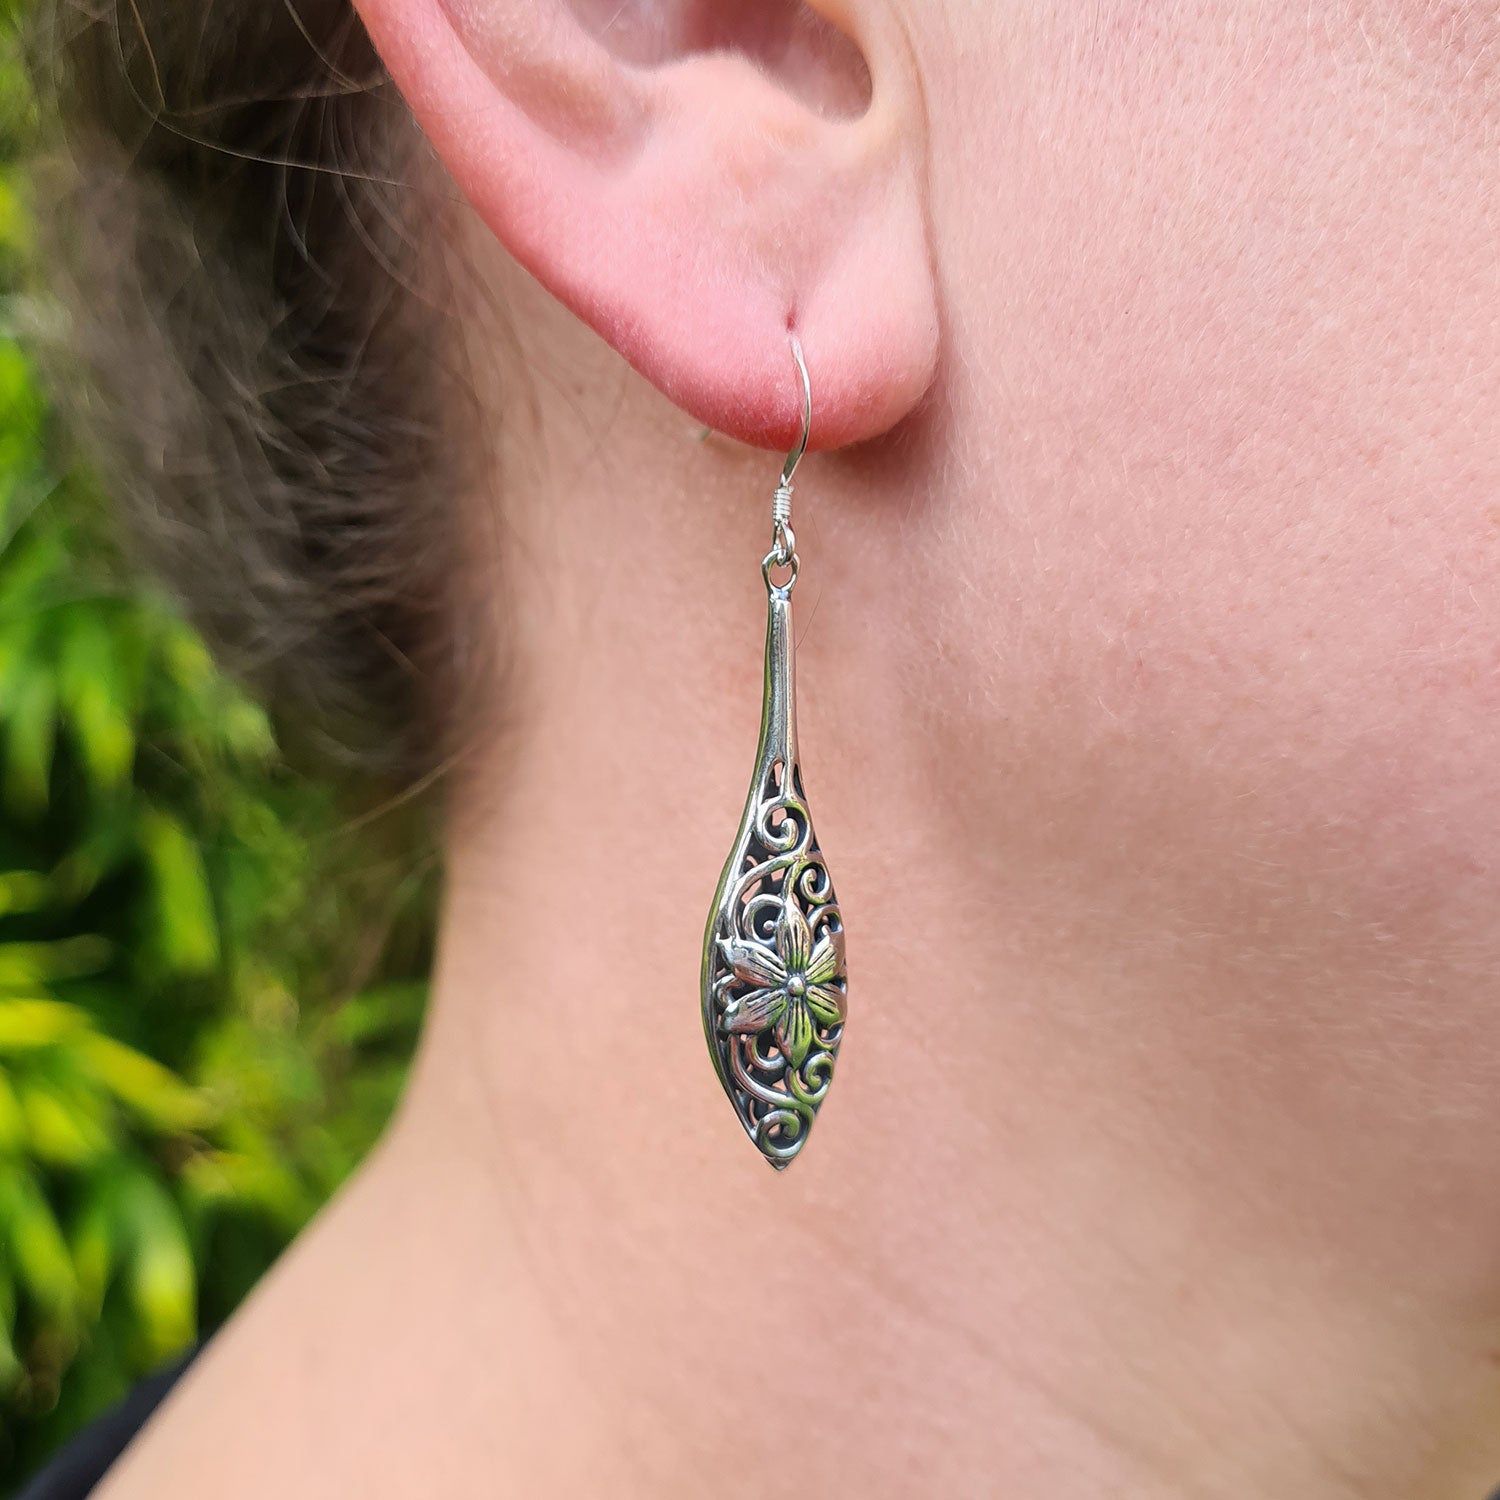 solid sterling silver drop earrings being worn in ladies ear